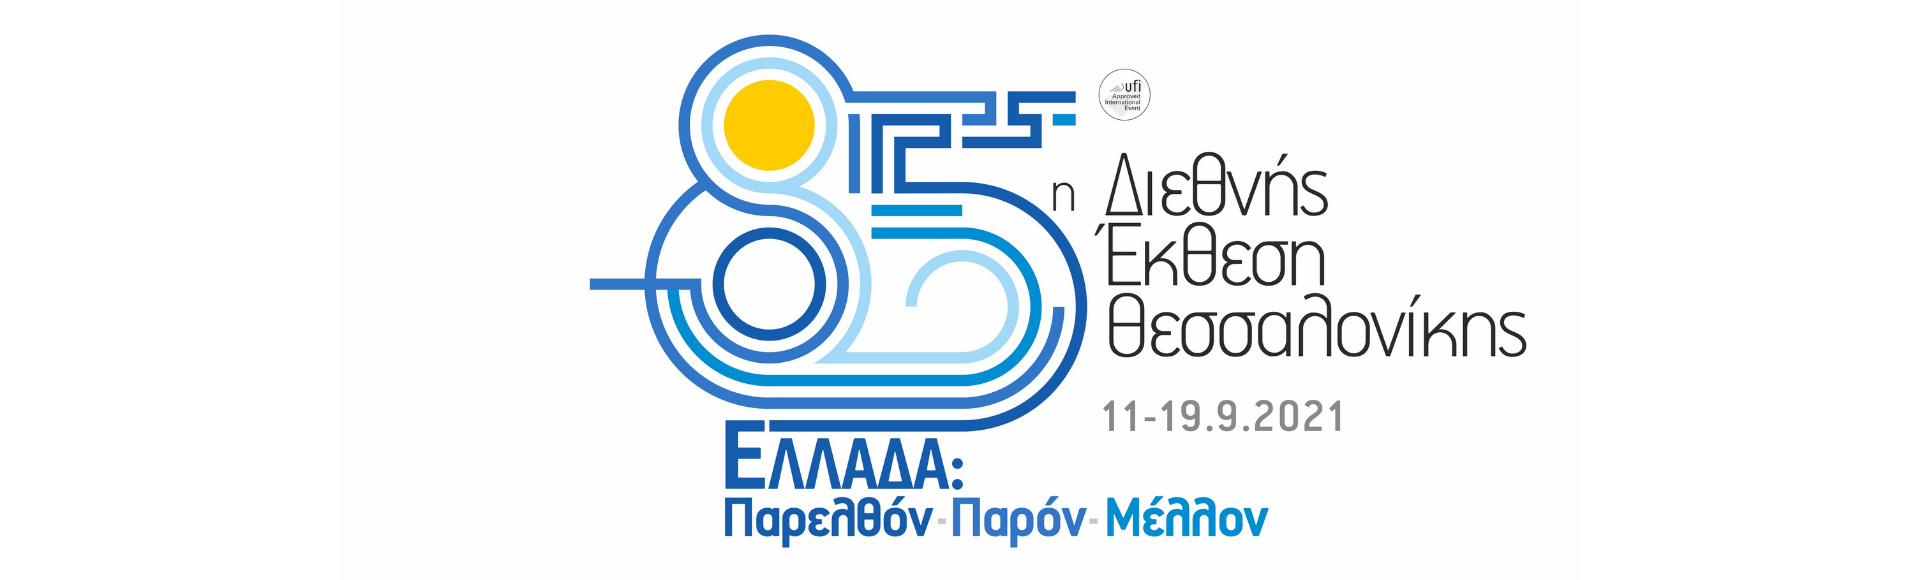 Συμμετοχή στην 85η Δ.Ε.Θ. με το Elevate Greece